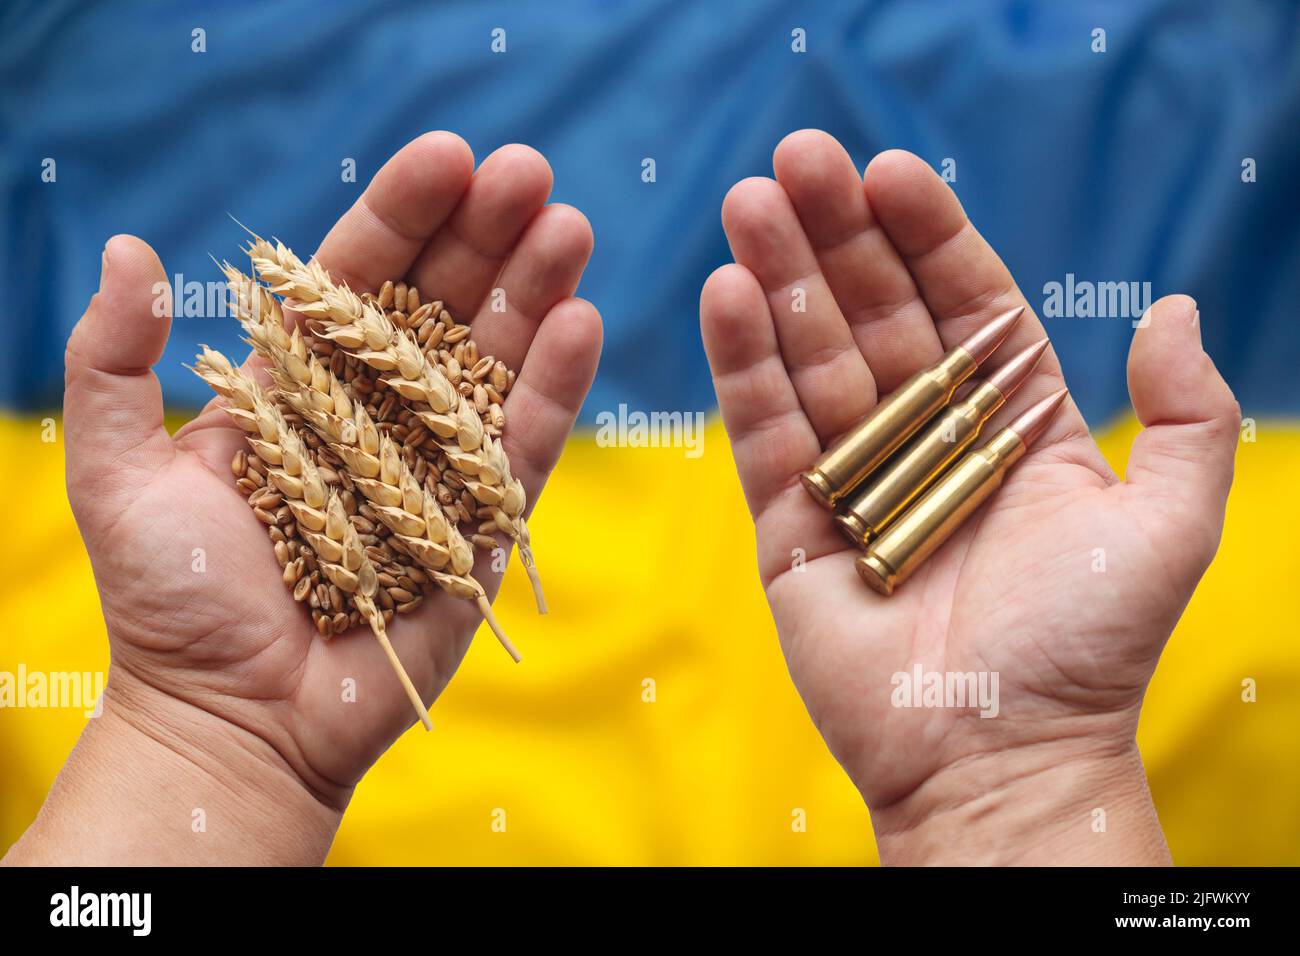 Mögliche Nahrungsmittelkrise durch den Krieg in der Ukraine verursacht. Hände mit Weizenkorn und Munitionslagge, Ukraine-Flagge im Hintergrund. Konzept. Stockfoto